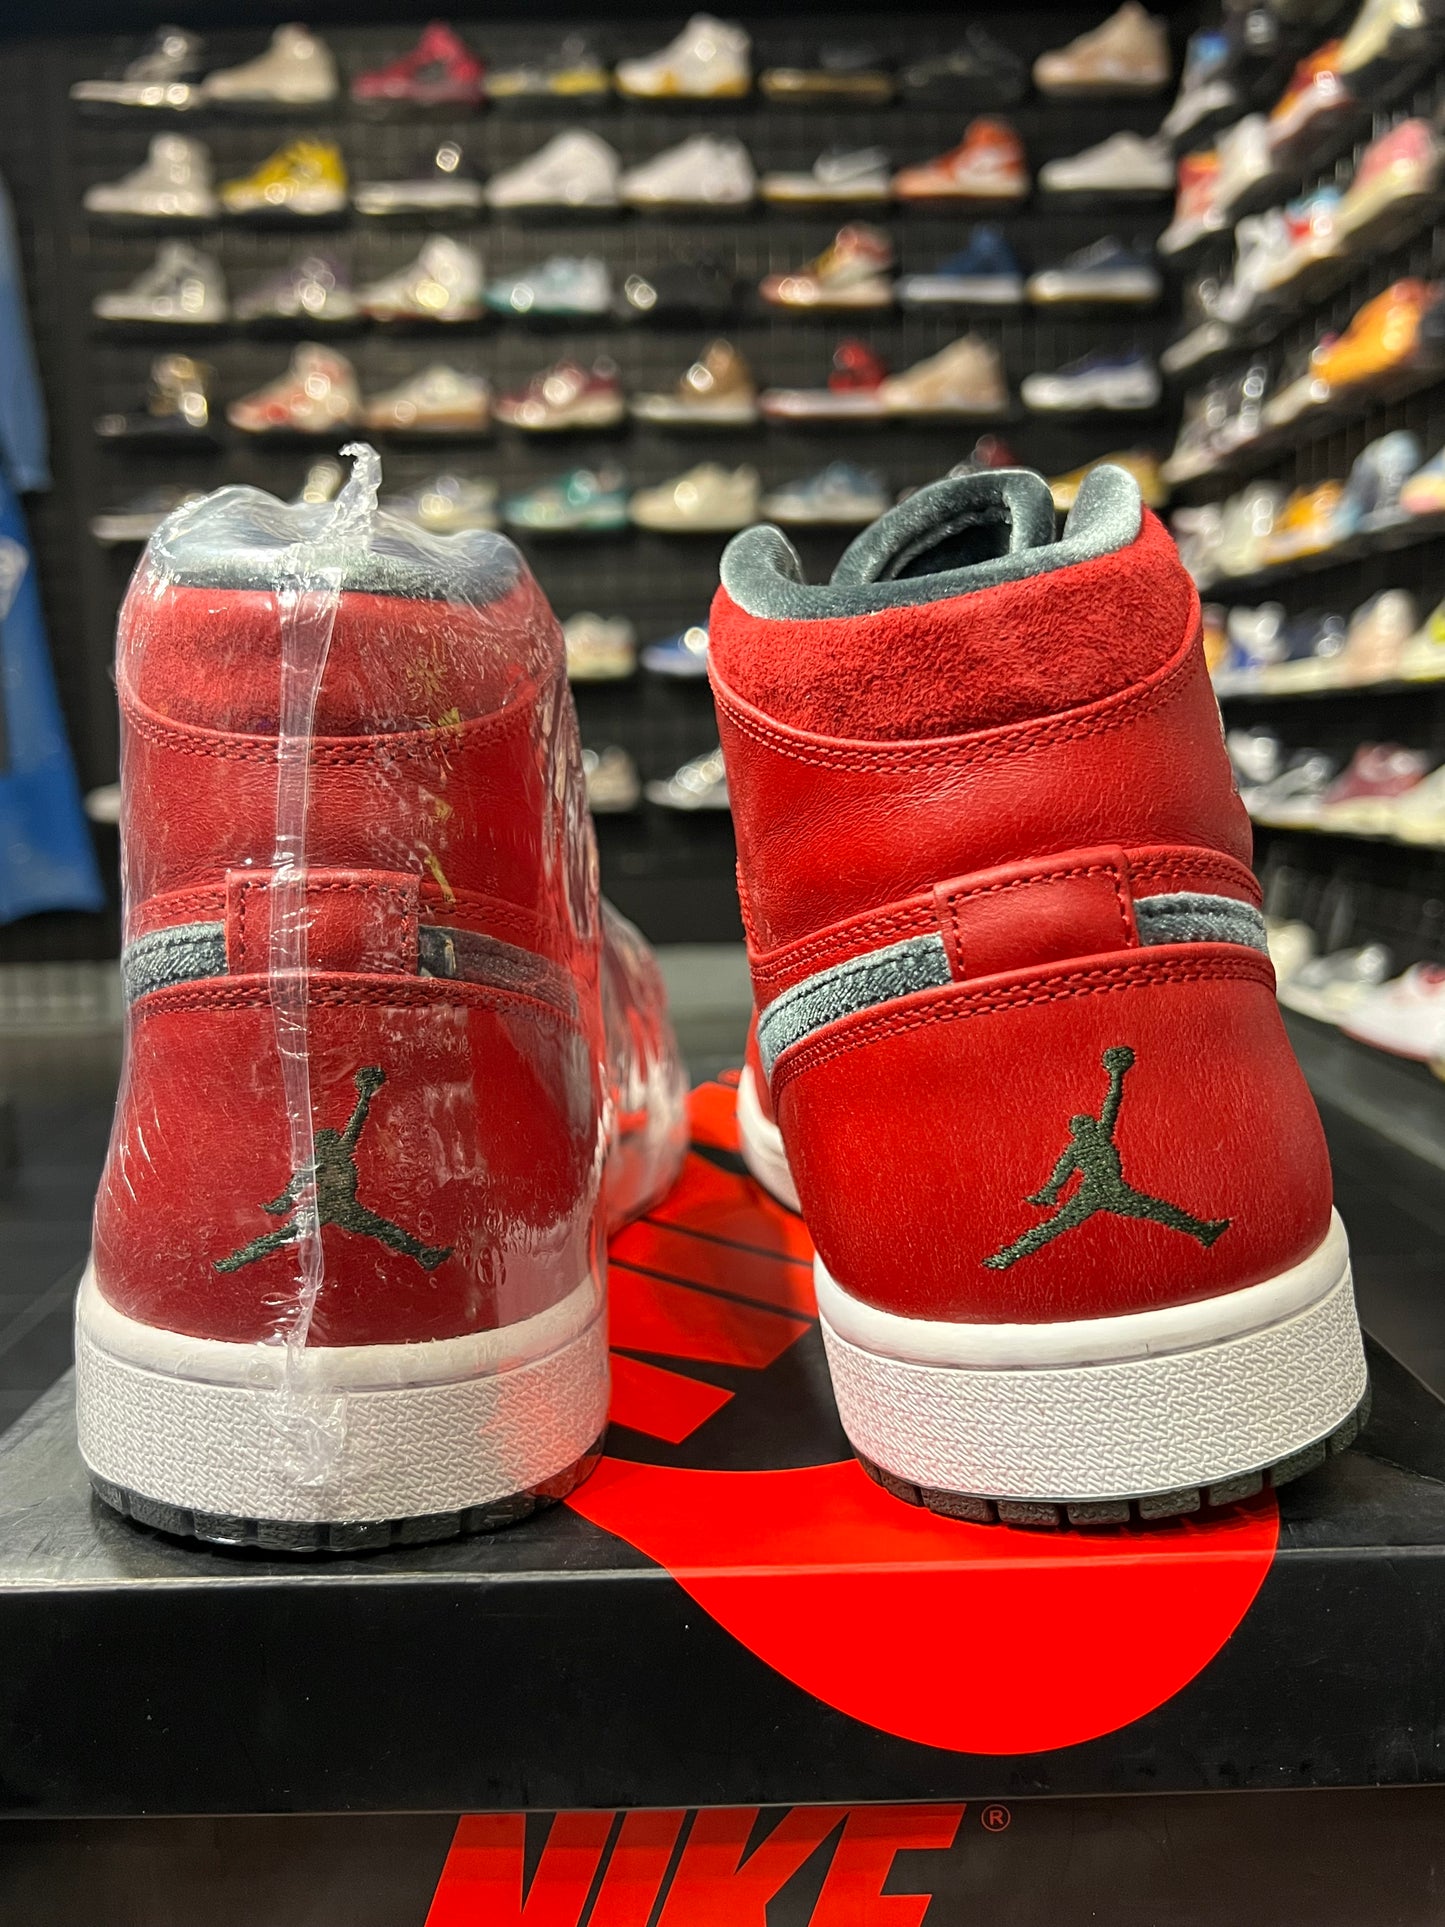 Nike Air Jordan 1 High Retro Red Premium 2013 Men Shoes New With Box